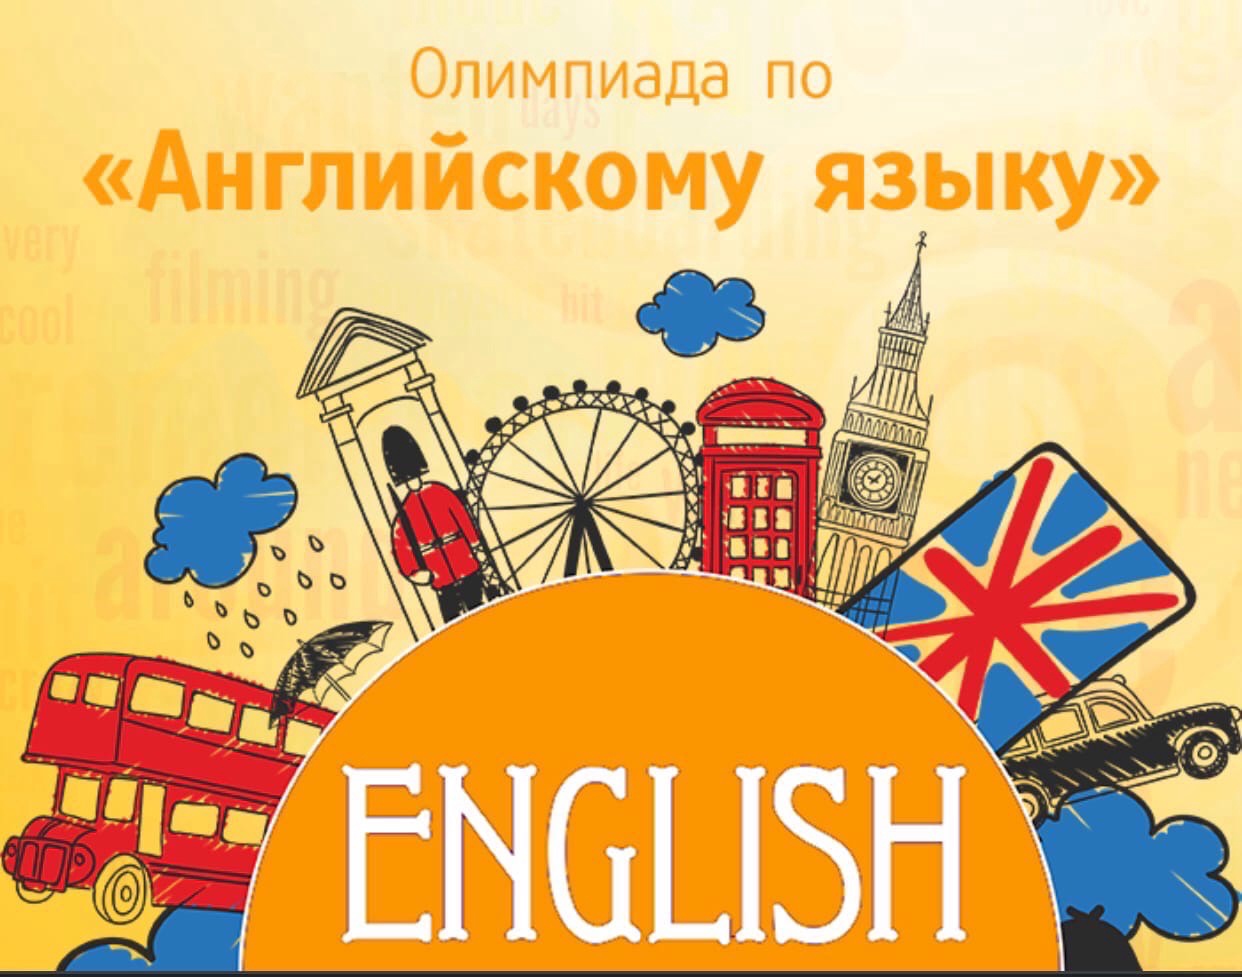 Бесплатные олимпиады по английскому языку